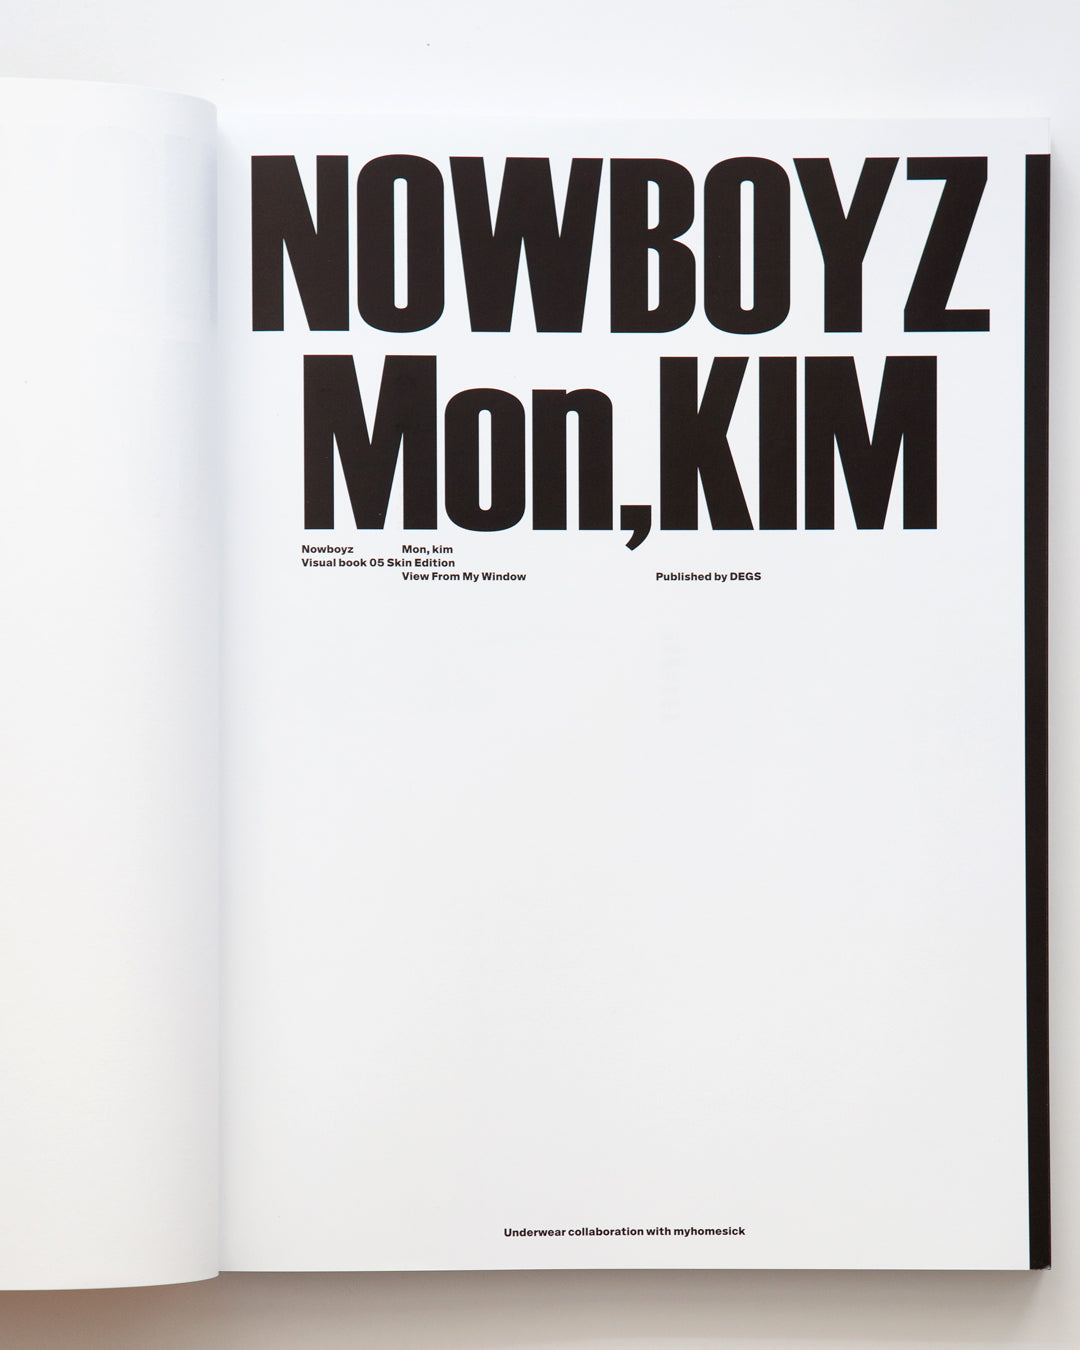 Mon Kim - Nowboyz 05: Skin Edition — View From My Window